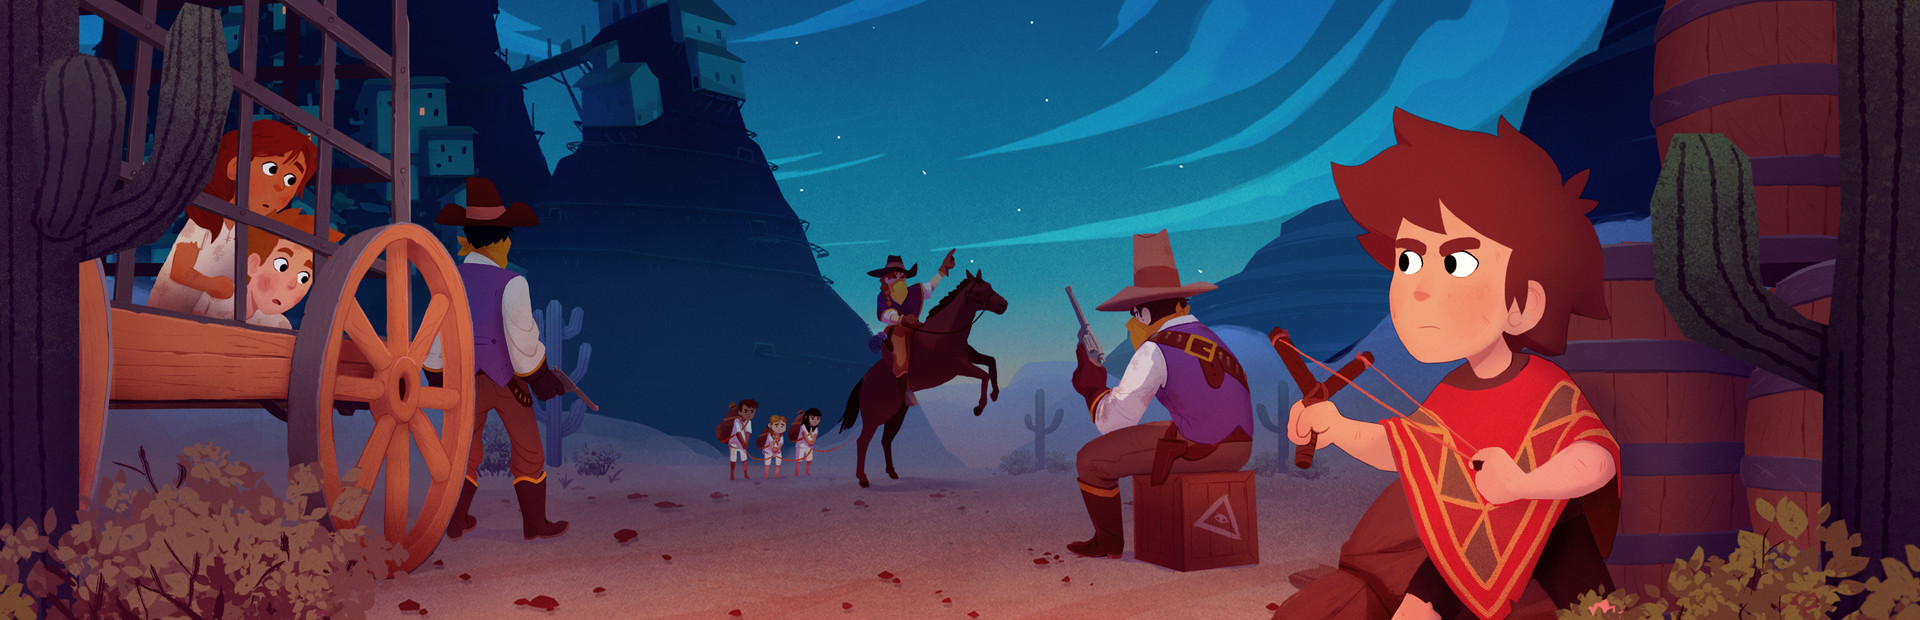 El Hijo - A Wild West Tale cover image